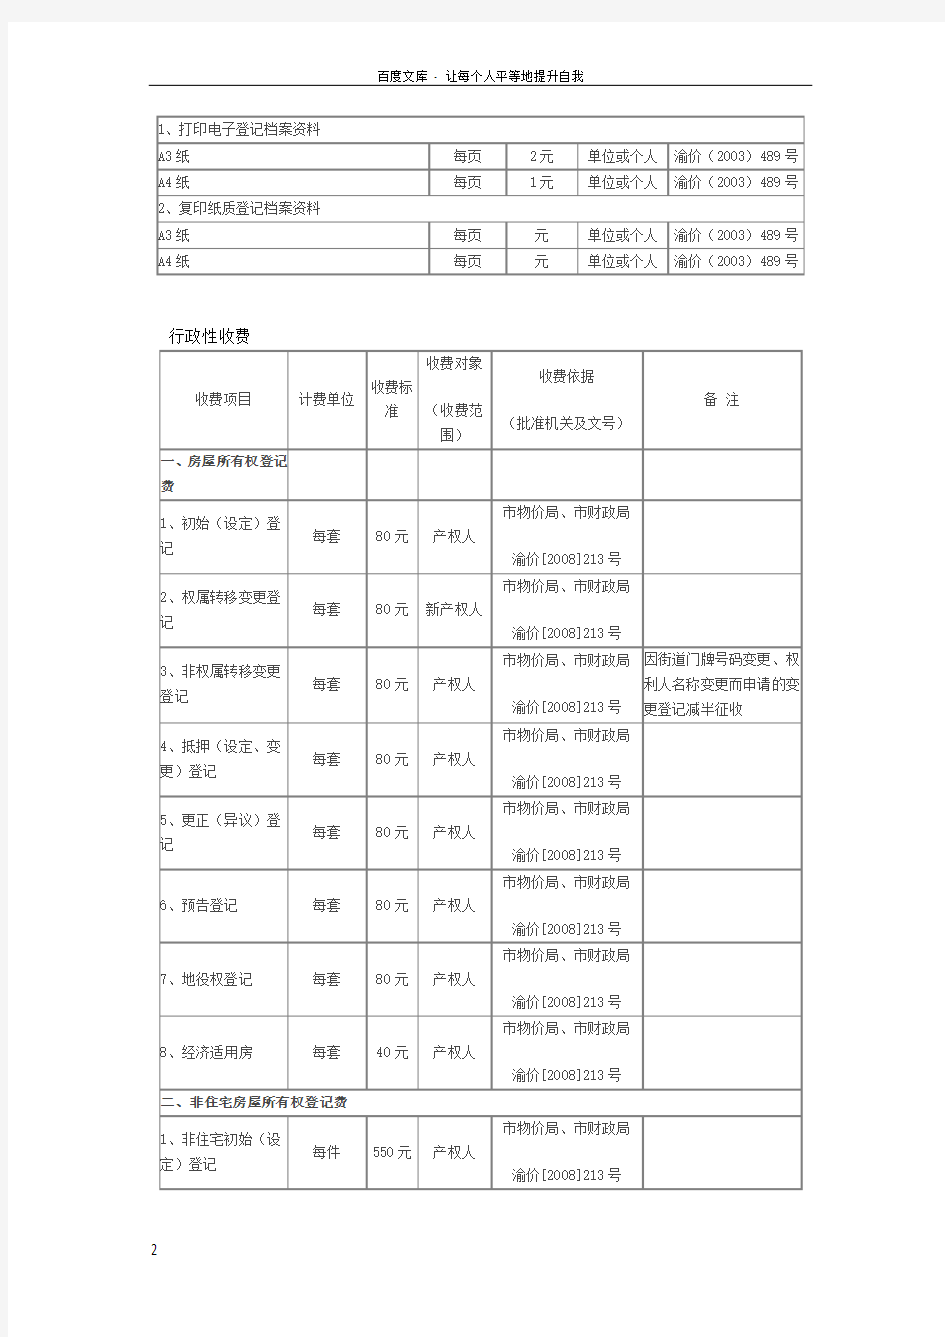 重庆市房屋土地权属登记中心收费项目